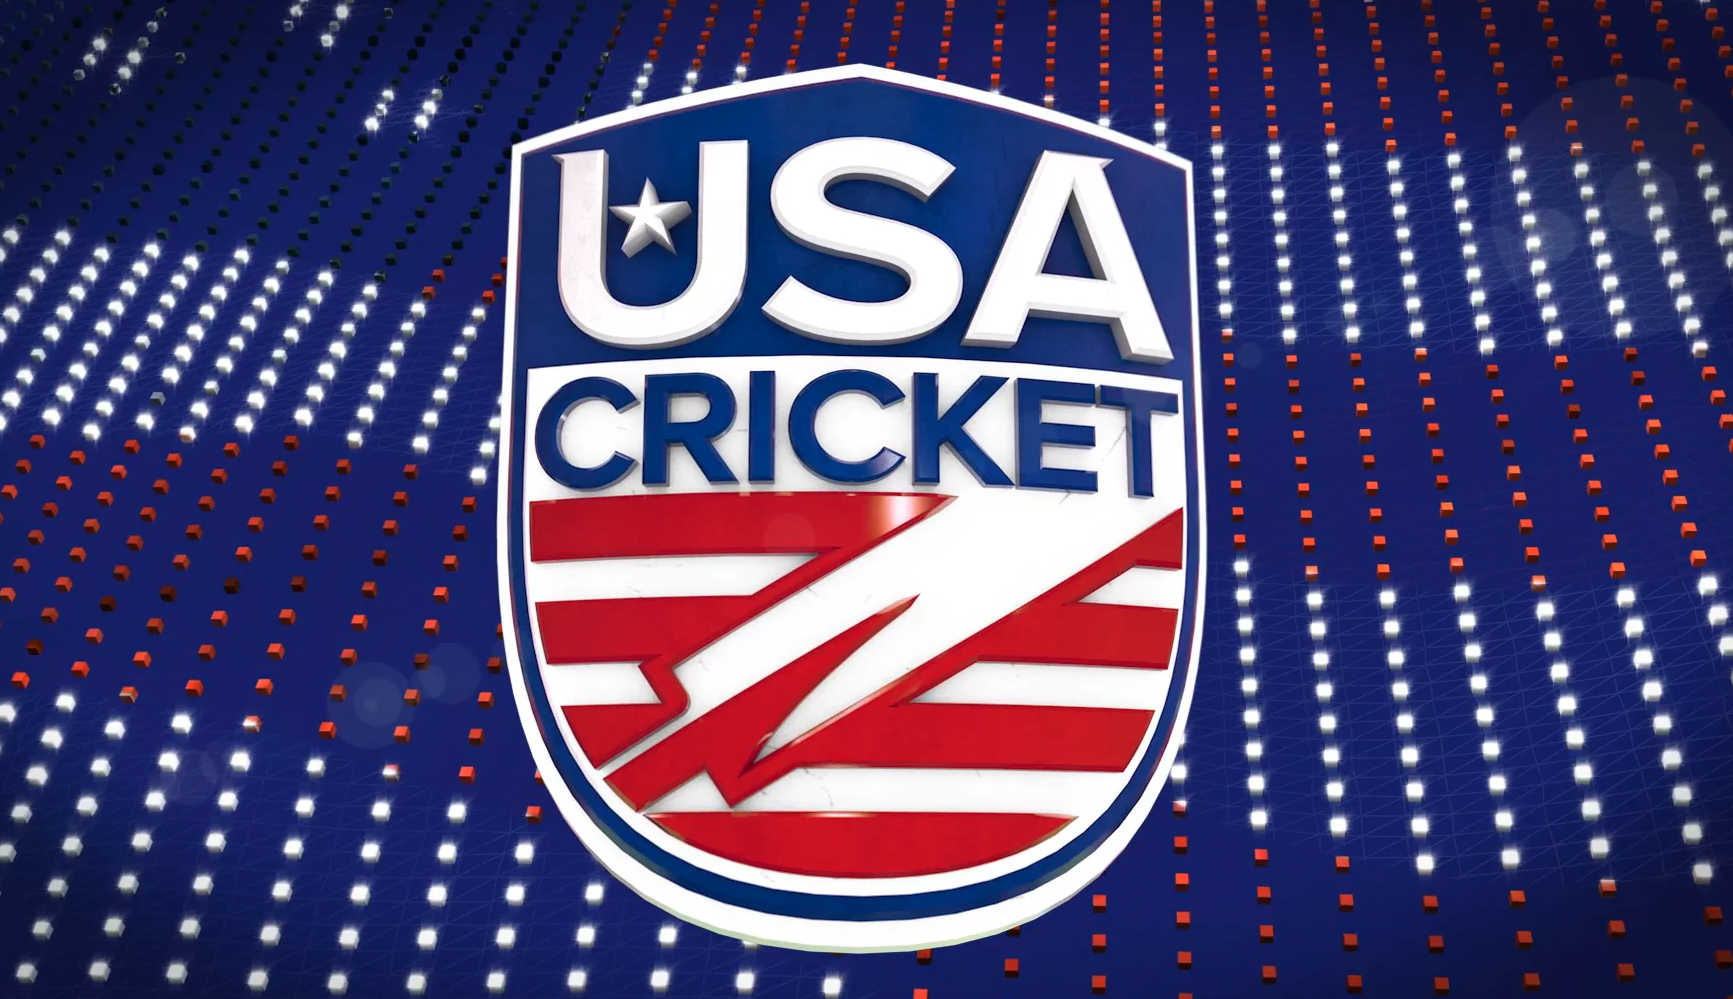 USA Cricket Logo